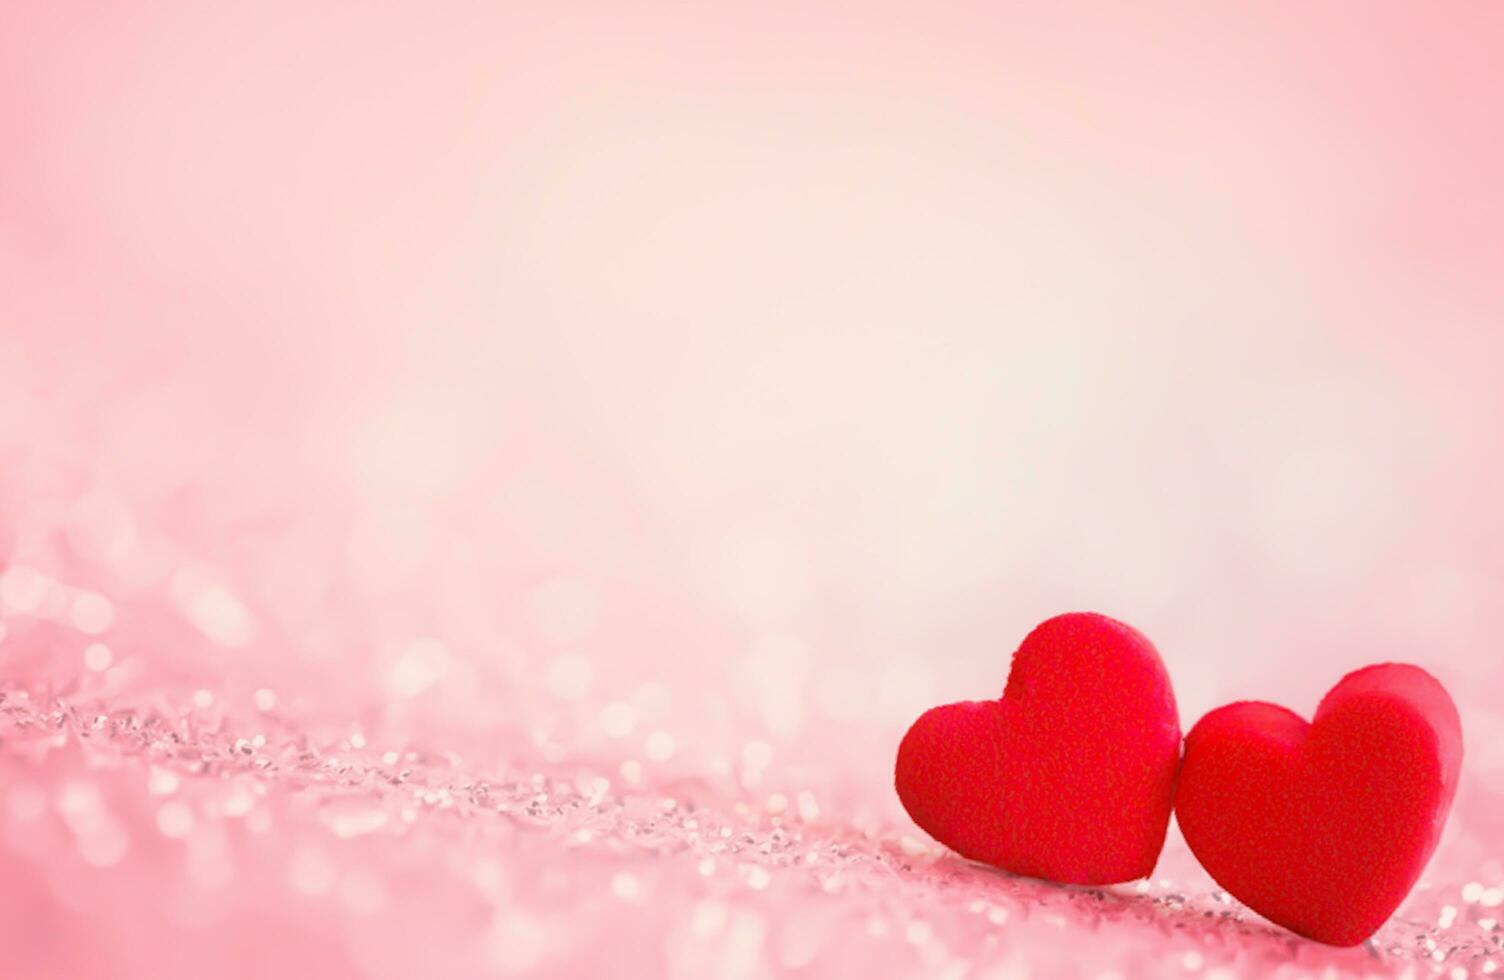 San Valentín día, vistoso papel corazones en línea como un regalo para San Valentín dia.corazon es otoño amor. marco, 3d amor me gusta corazón íconos flotante en pequeño rojo presente regalo caja con febrero ,14 enamorado día foto